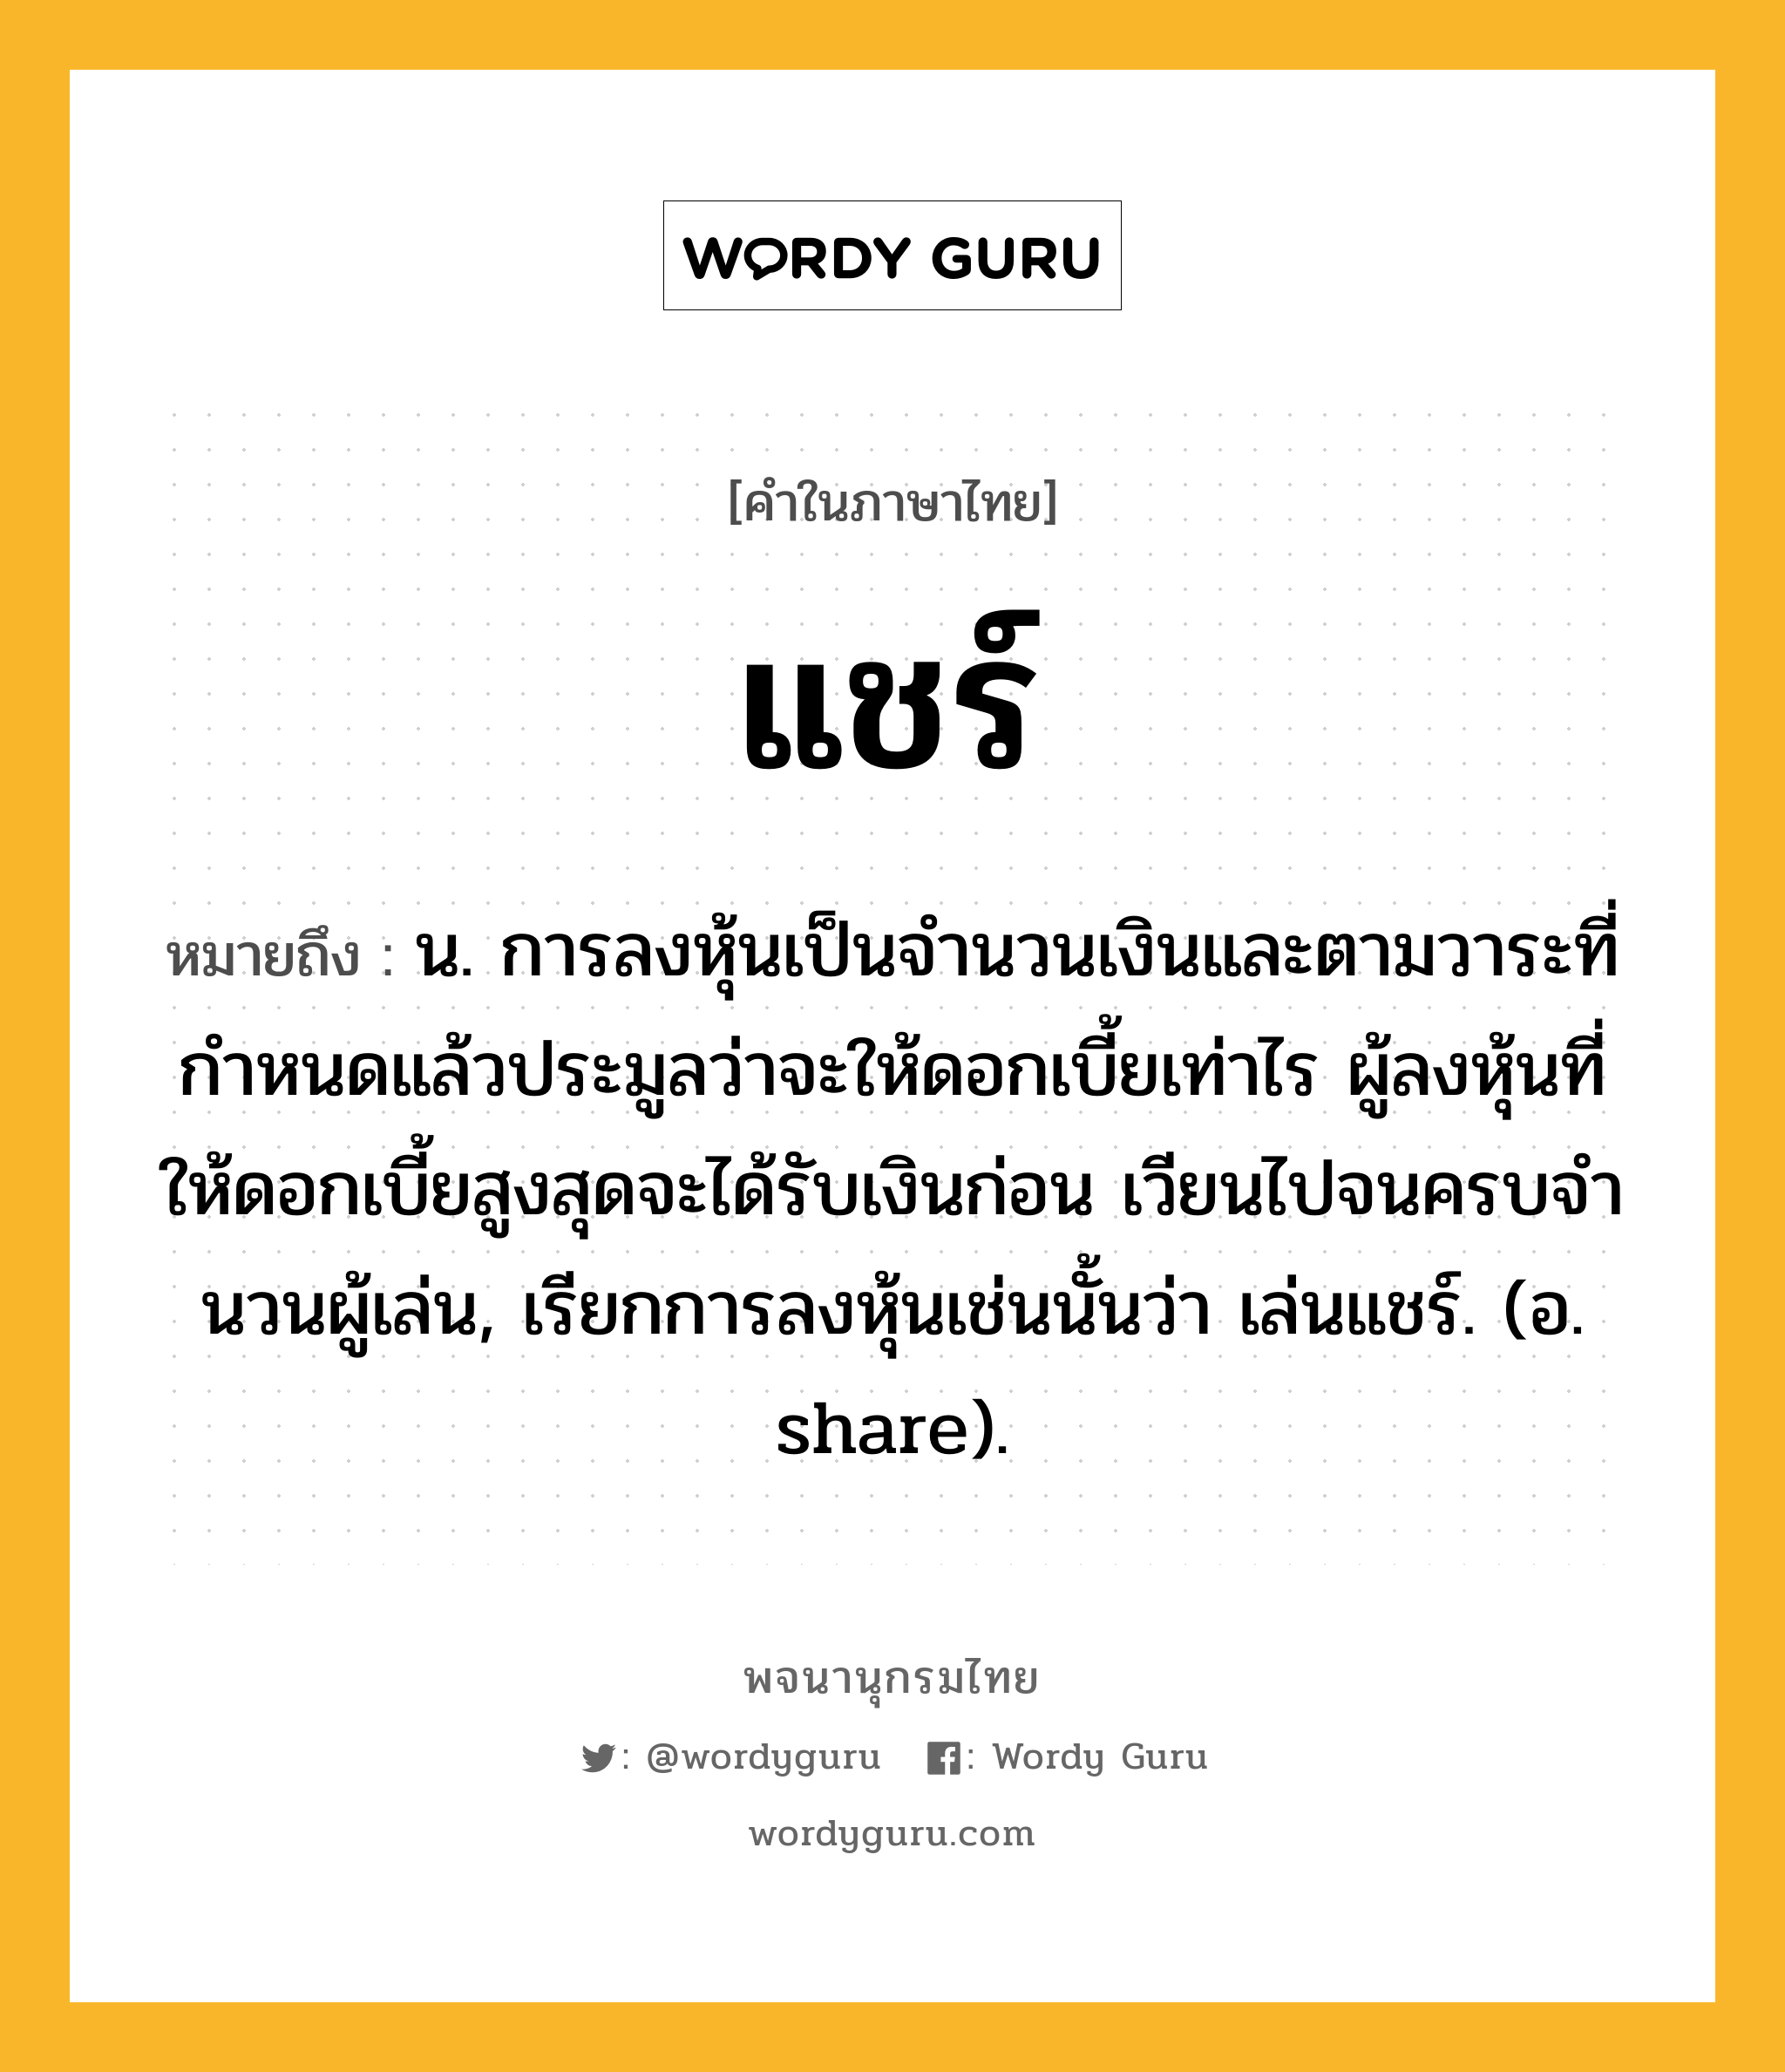 แชร์ ความหมาย หมายถึงอะไร?, คำในภาษาไทย แชร์ หมายถึง น. การลงหุ้นเป็นจํานวนเงินและตามวาระที่กําหนดแล้วประมูลว่าจะให้ดอกเบี้ยเท่าไร ผู้ลงหุ้นที่ให้ดอกเบี้ยสูงสุดจะได้รับเงินก่อน เวียนไปจนครบจํานวนผู้เล่น, เรียกการลงหุ้นเช่นนั้นว่า เล่นแชร์. (อ. share).